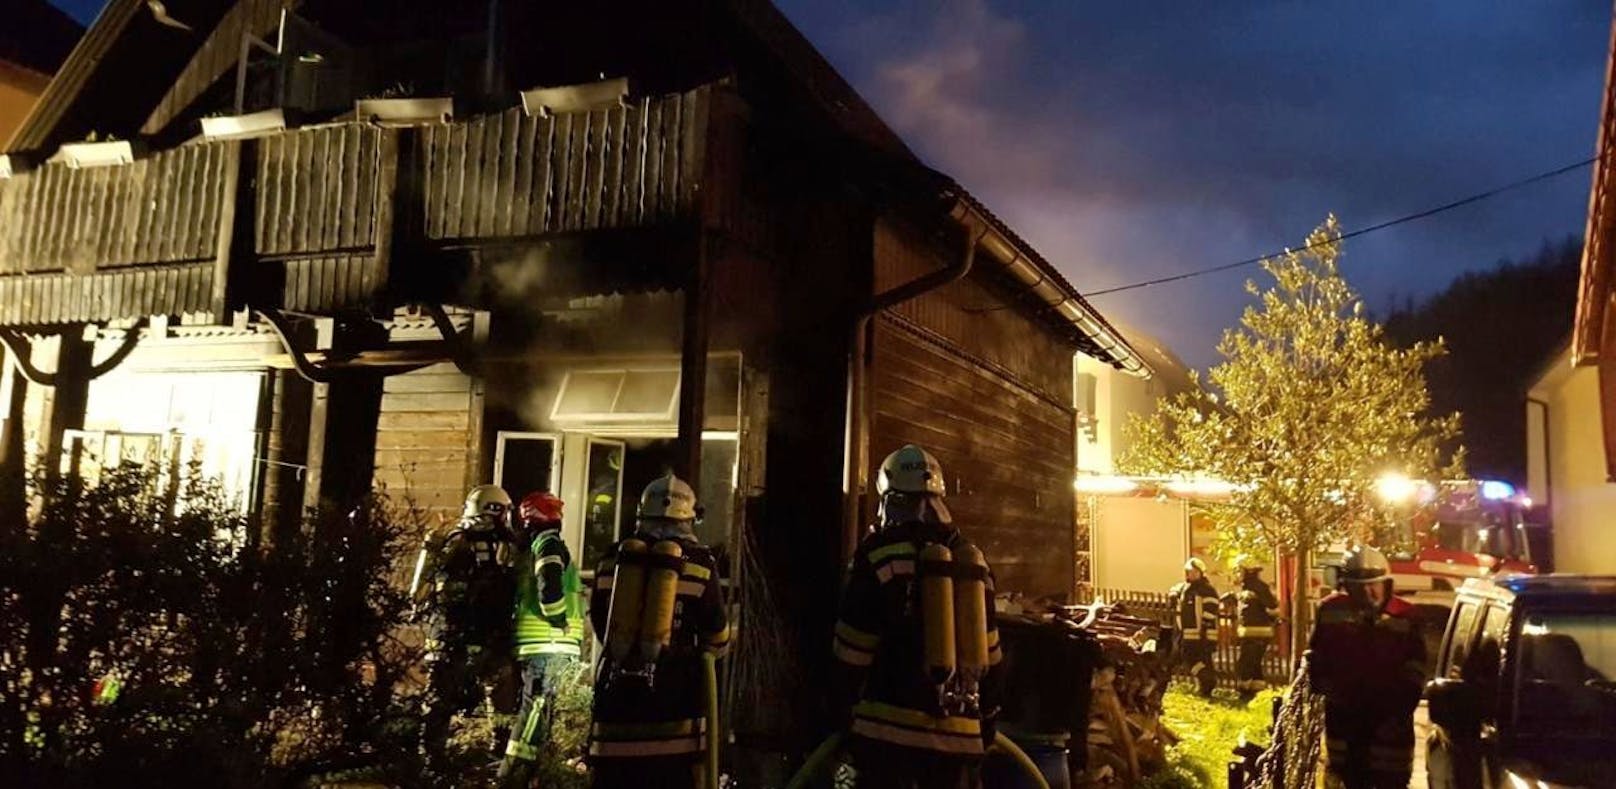 Wohnhaus stand in Brand, drei Feuerwehren mussten löschen.